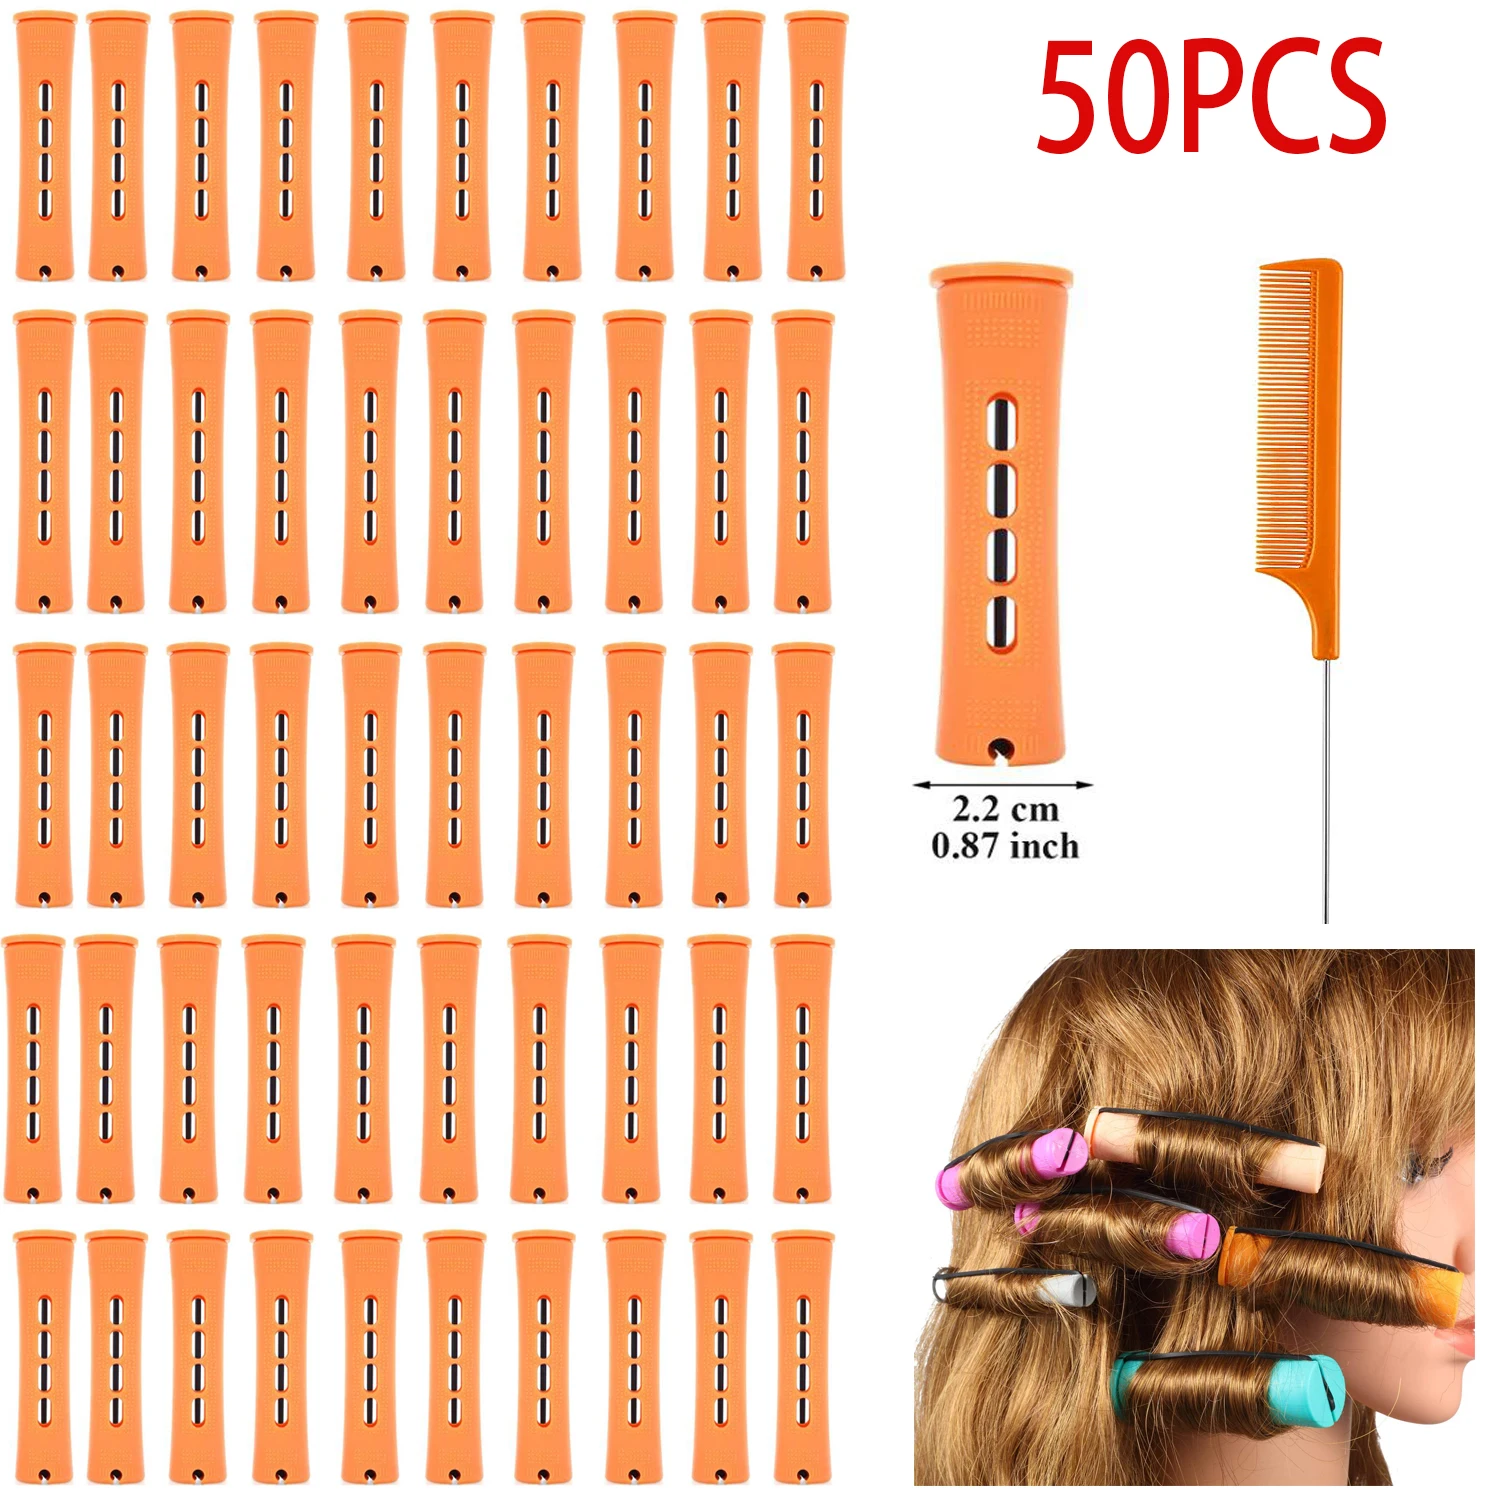 50 stück Haar Dauerwelle Stangen Kunststoff Kältewelle Stangen Haar Curling Roller Haar Styling Friseur Werkzeuge (0,87 Zoll, orange)